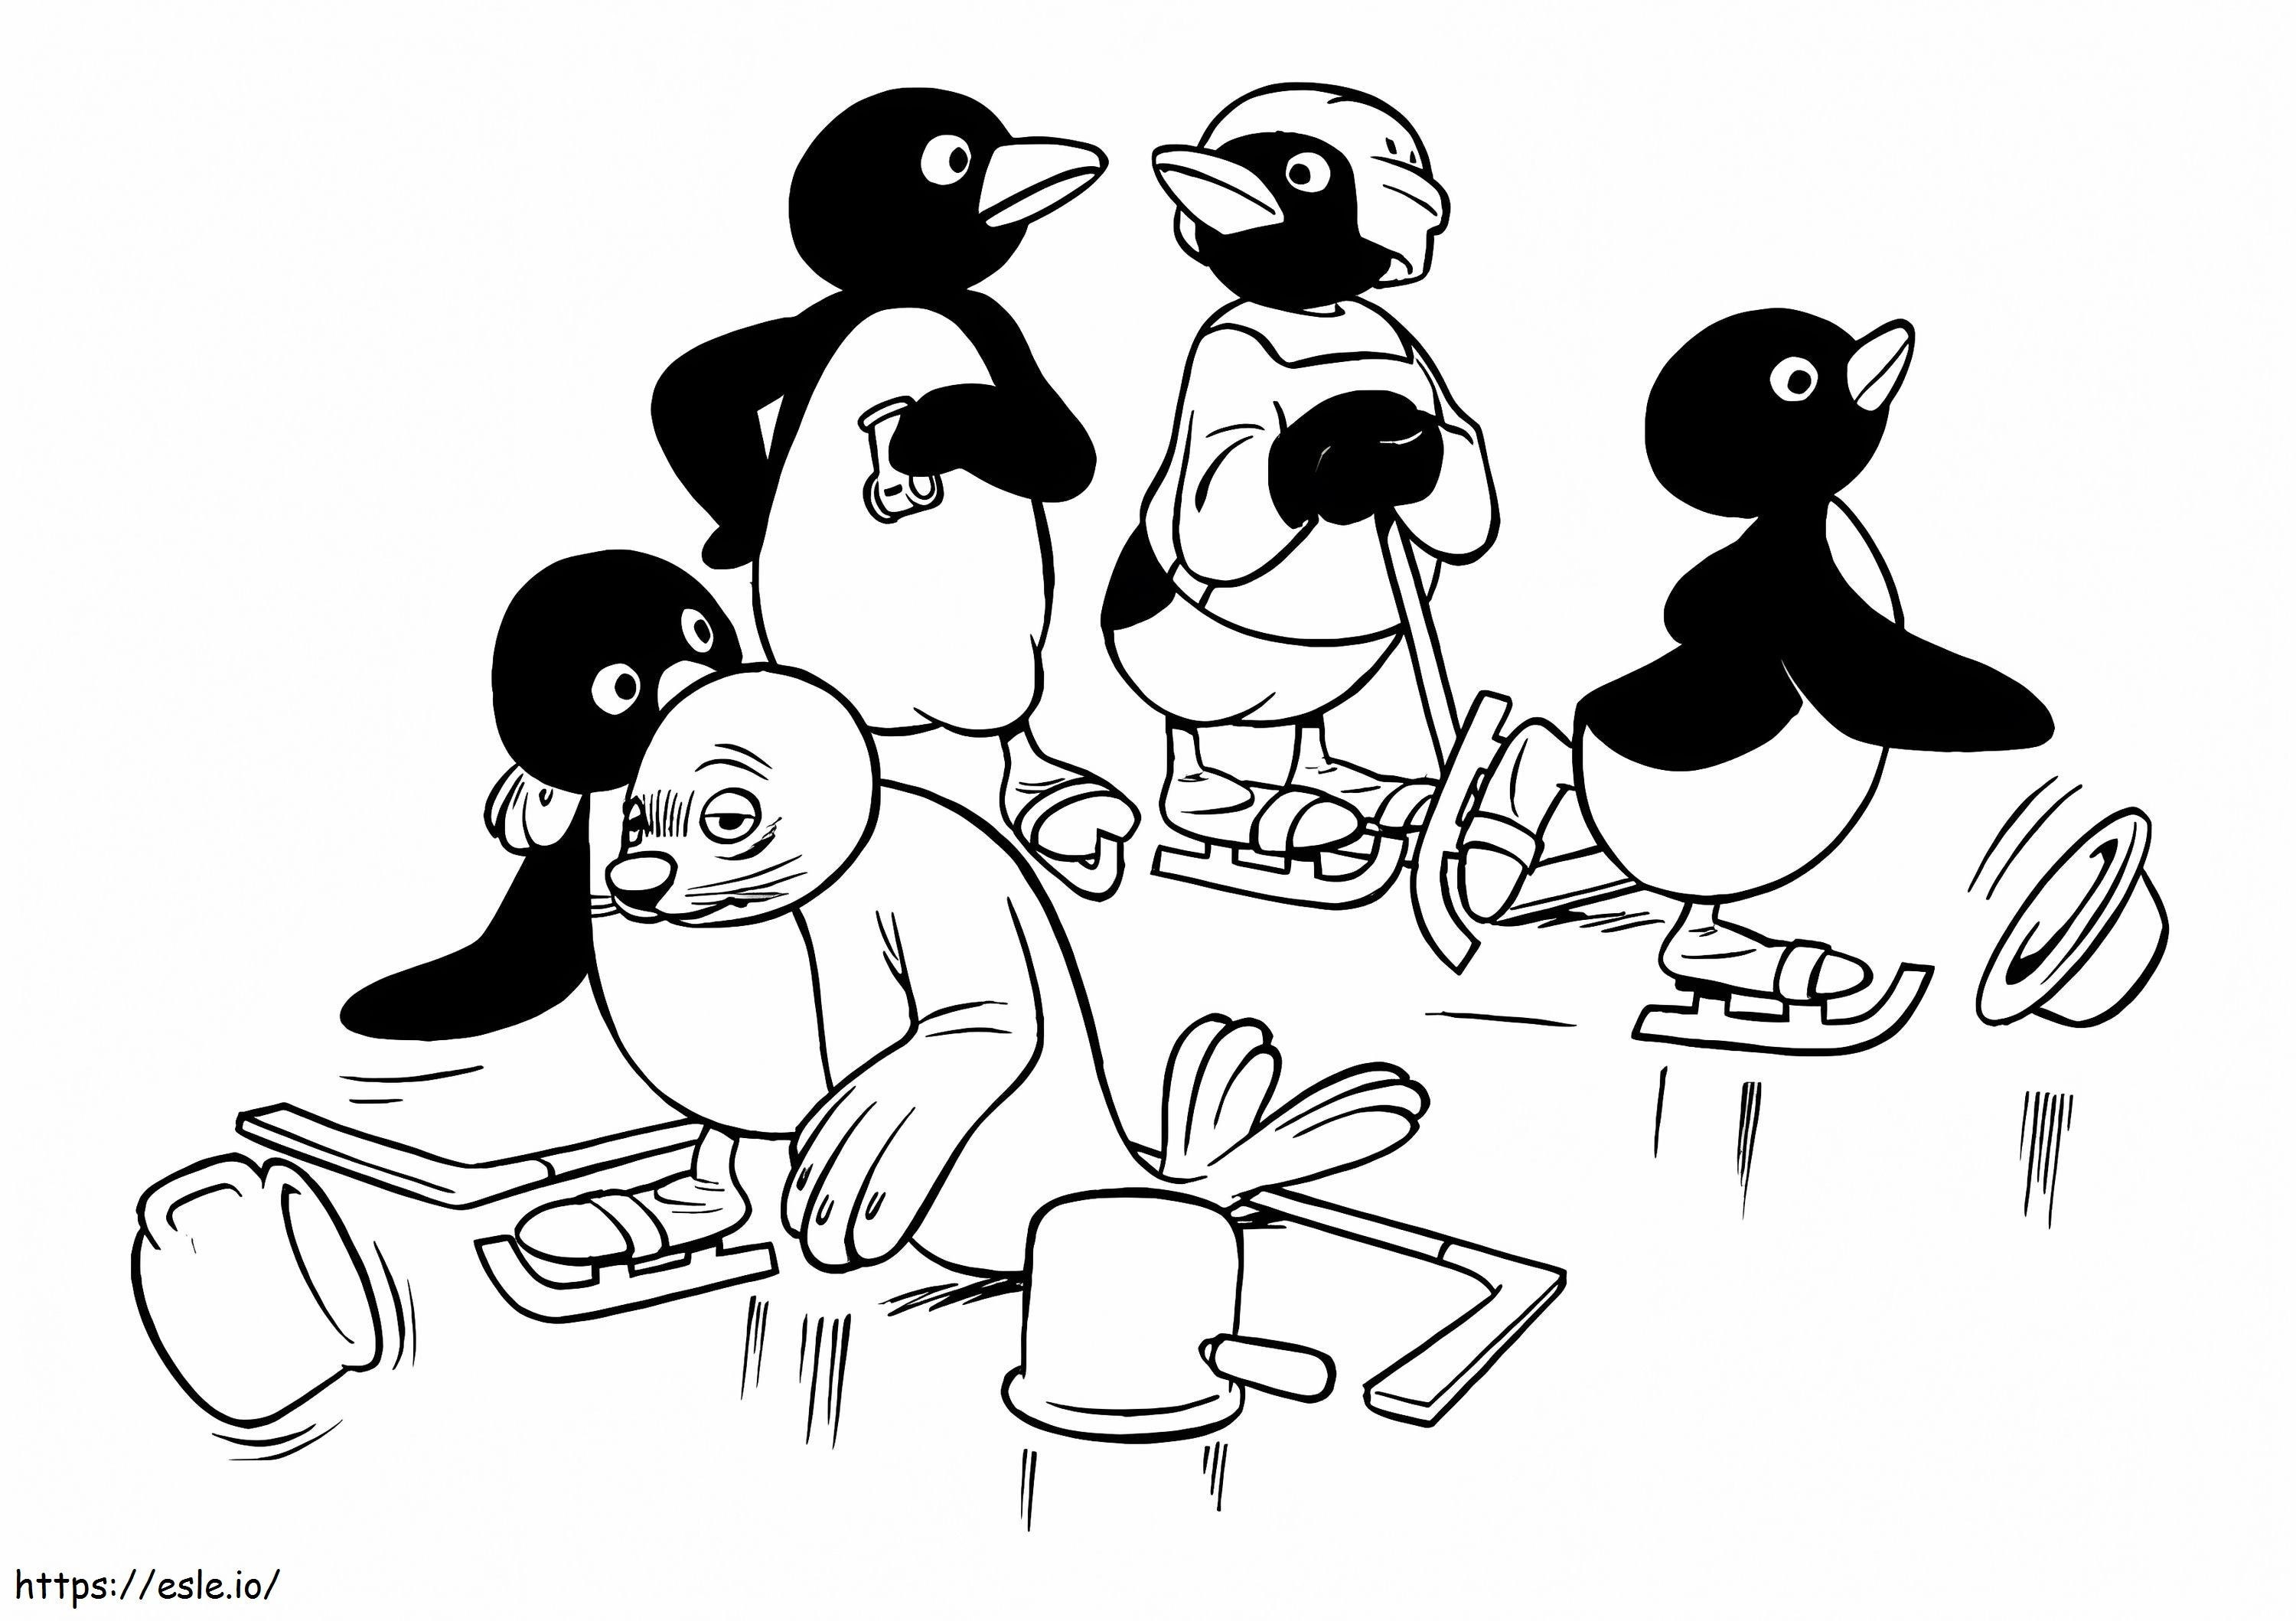 Squadra Pingu da colorare